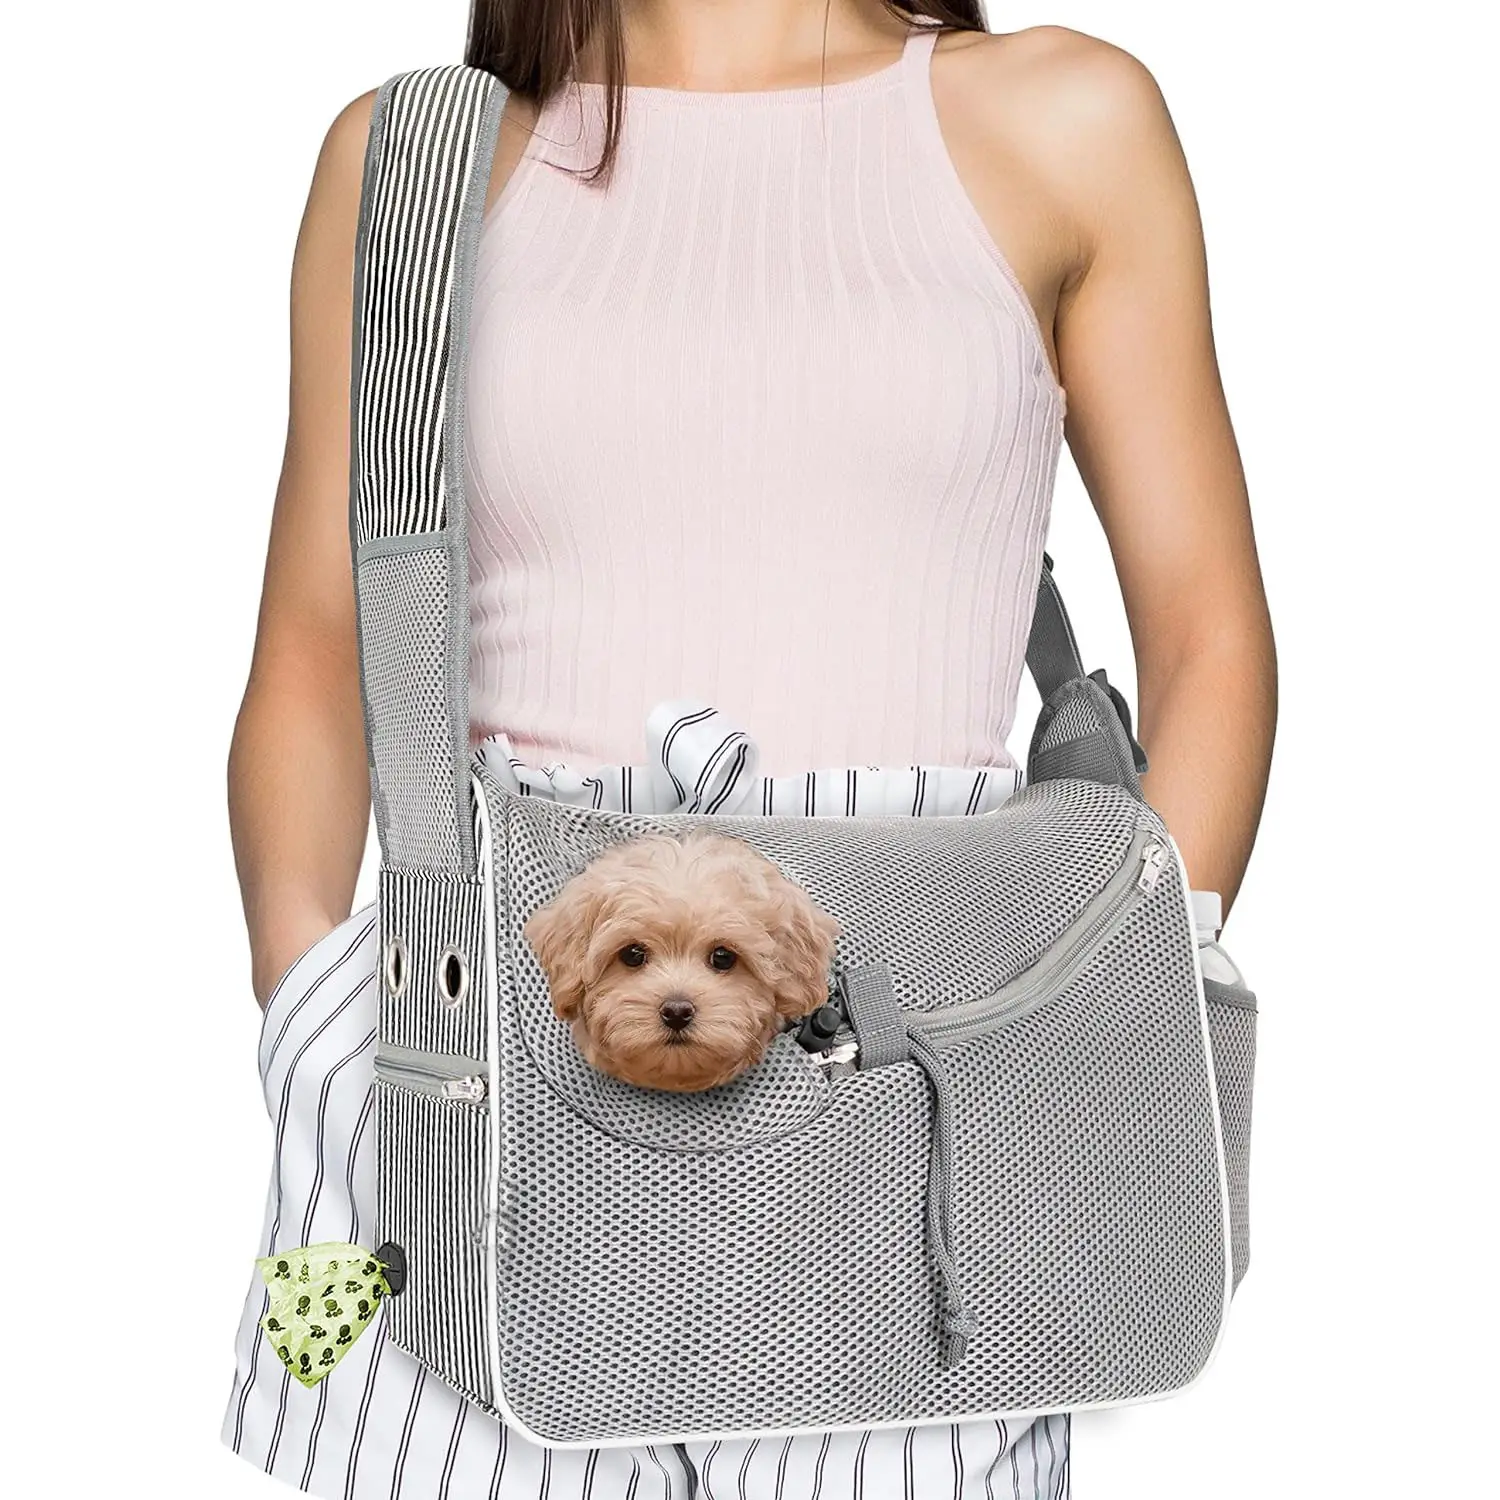 günstiger tragbarer katzen-rucksack für reisen hund haustier tragetasche schlinge schultertasche